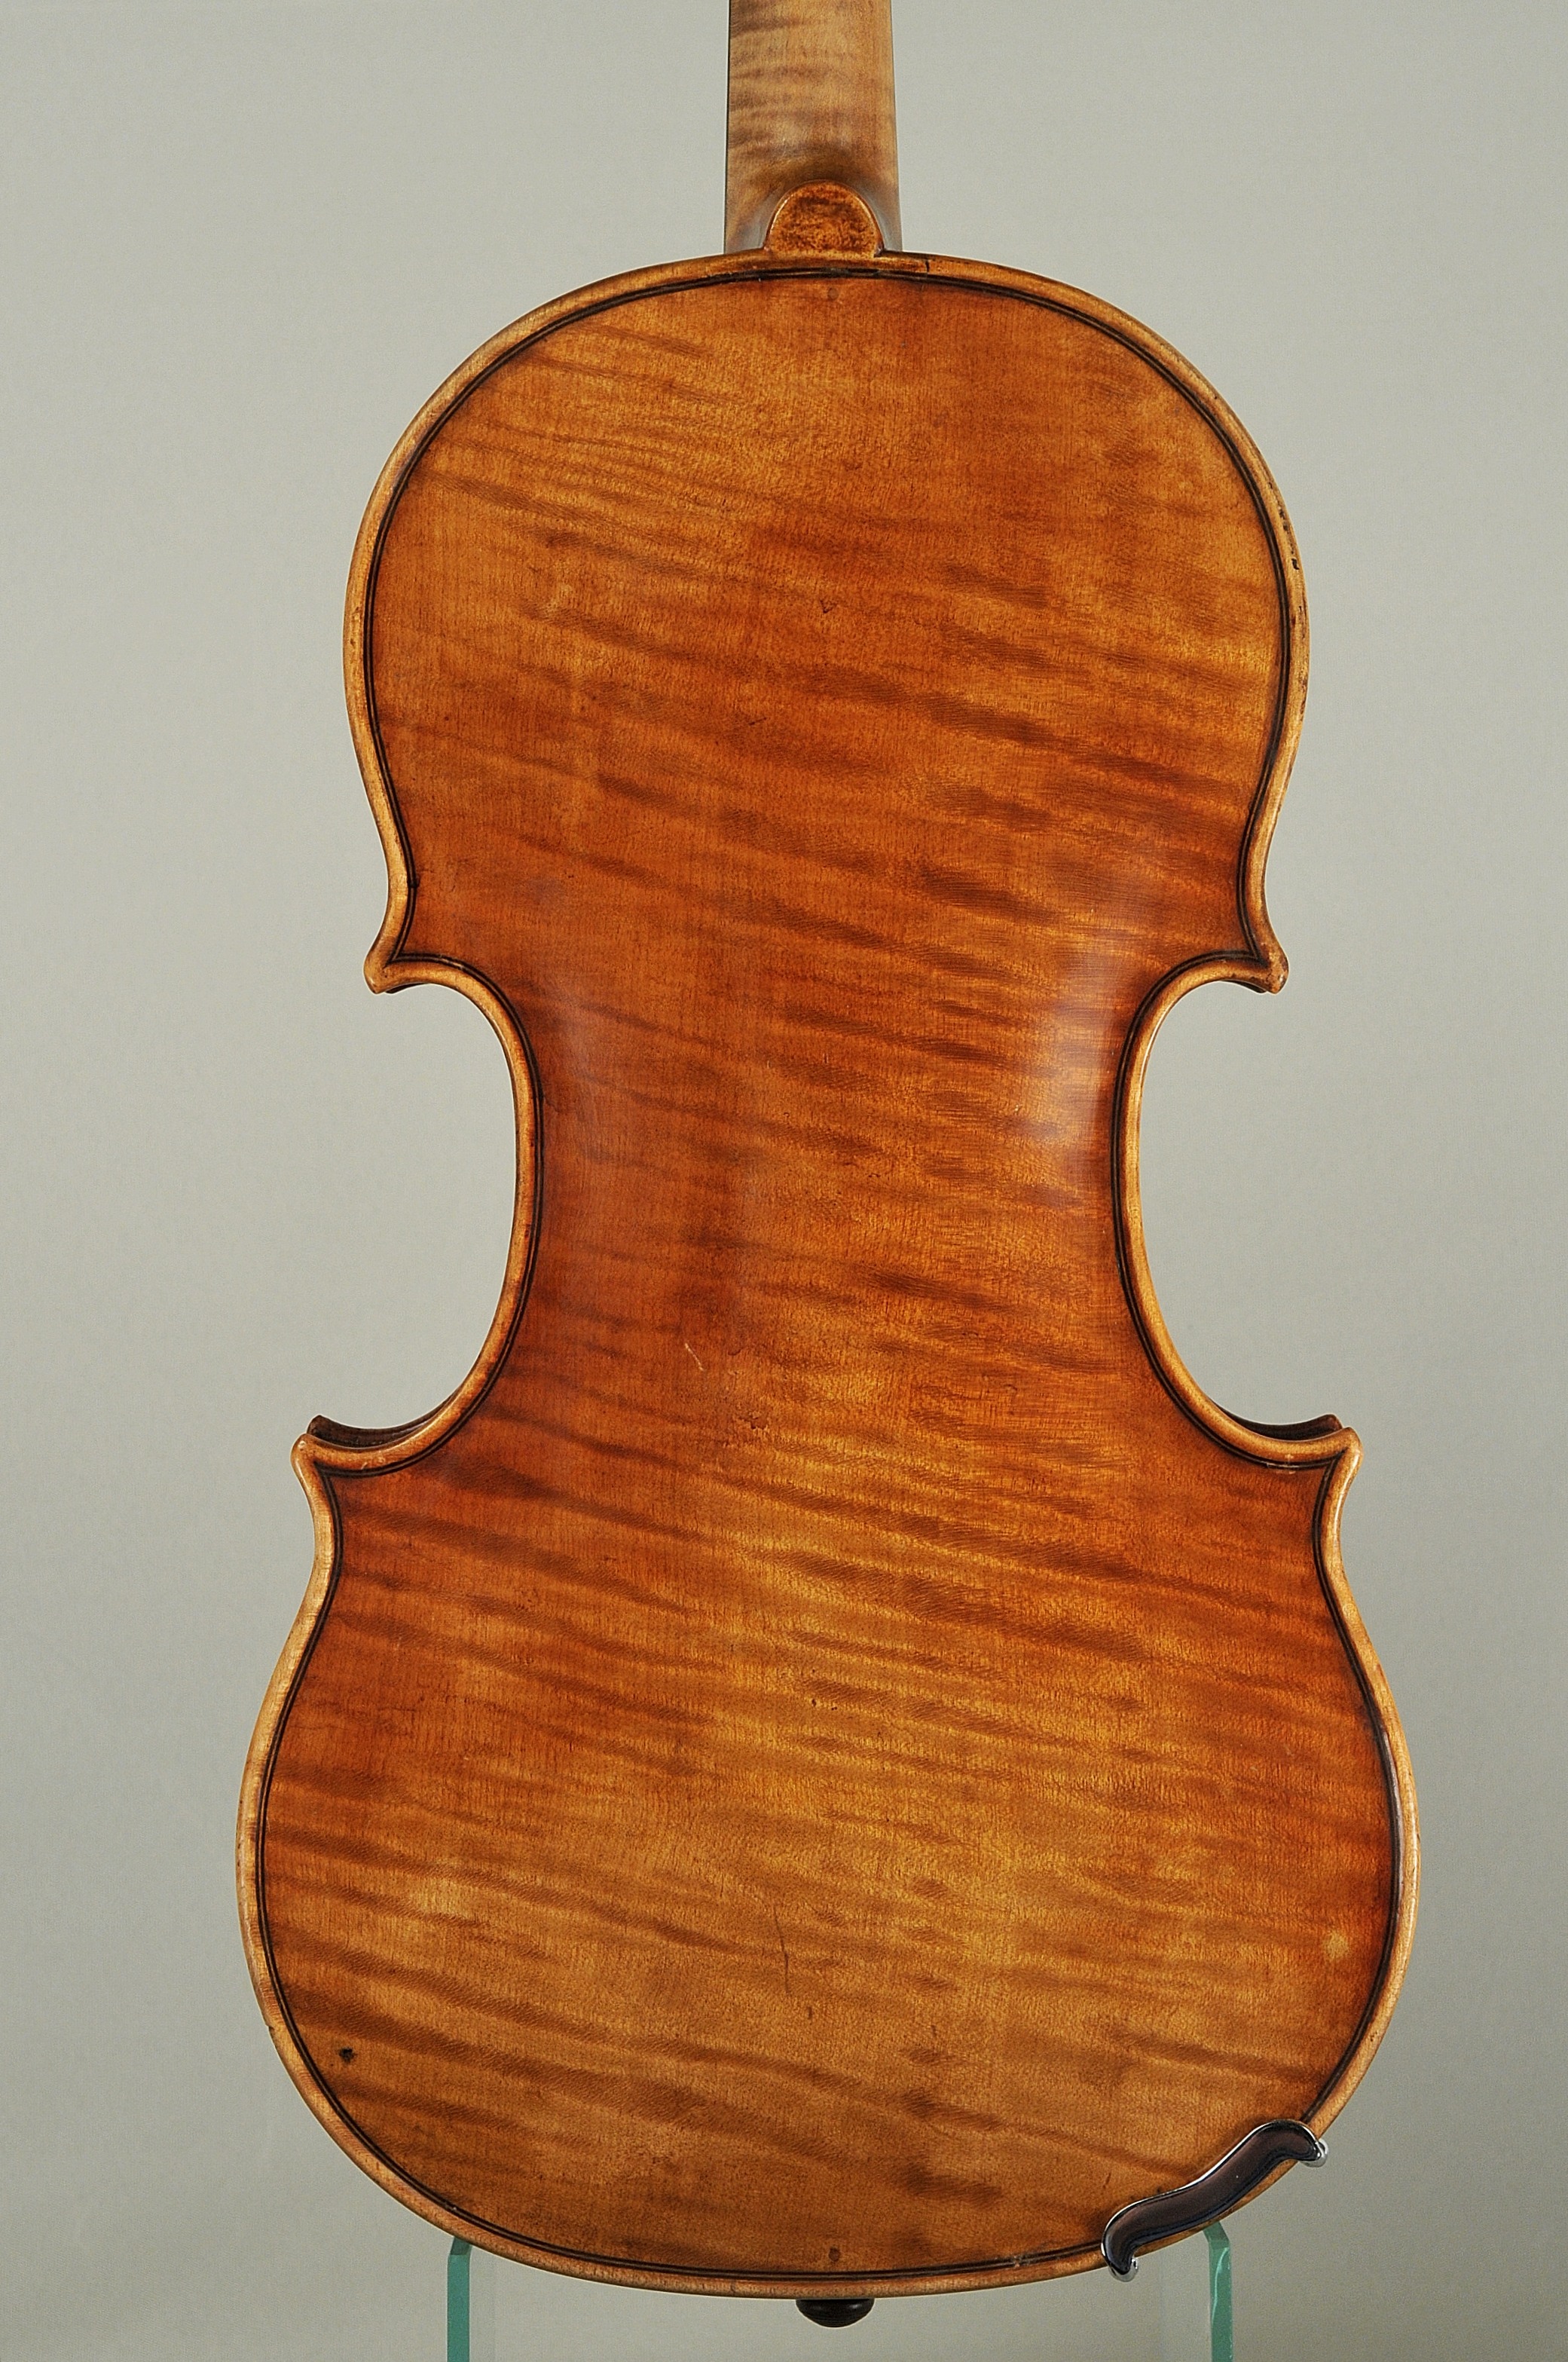 Mathias Heinicke 1873-1956 Violin, Wildstein 1950